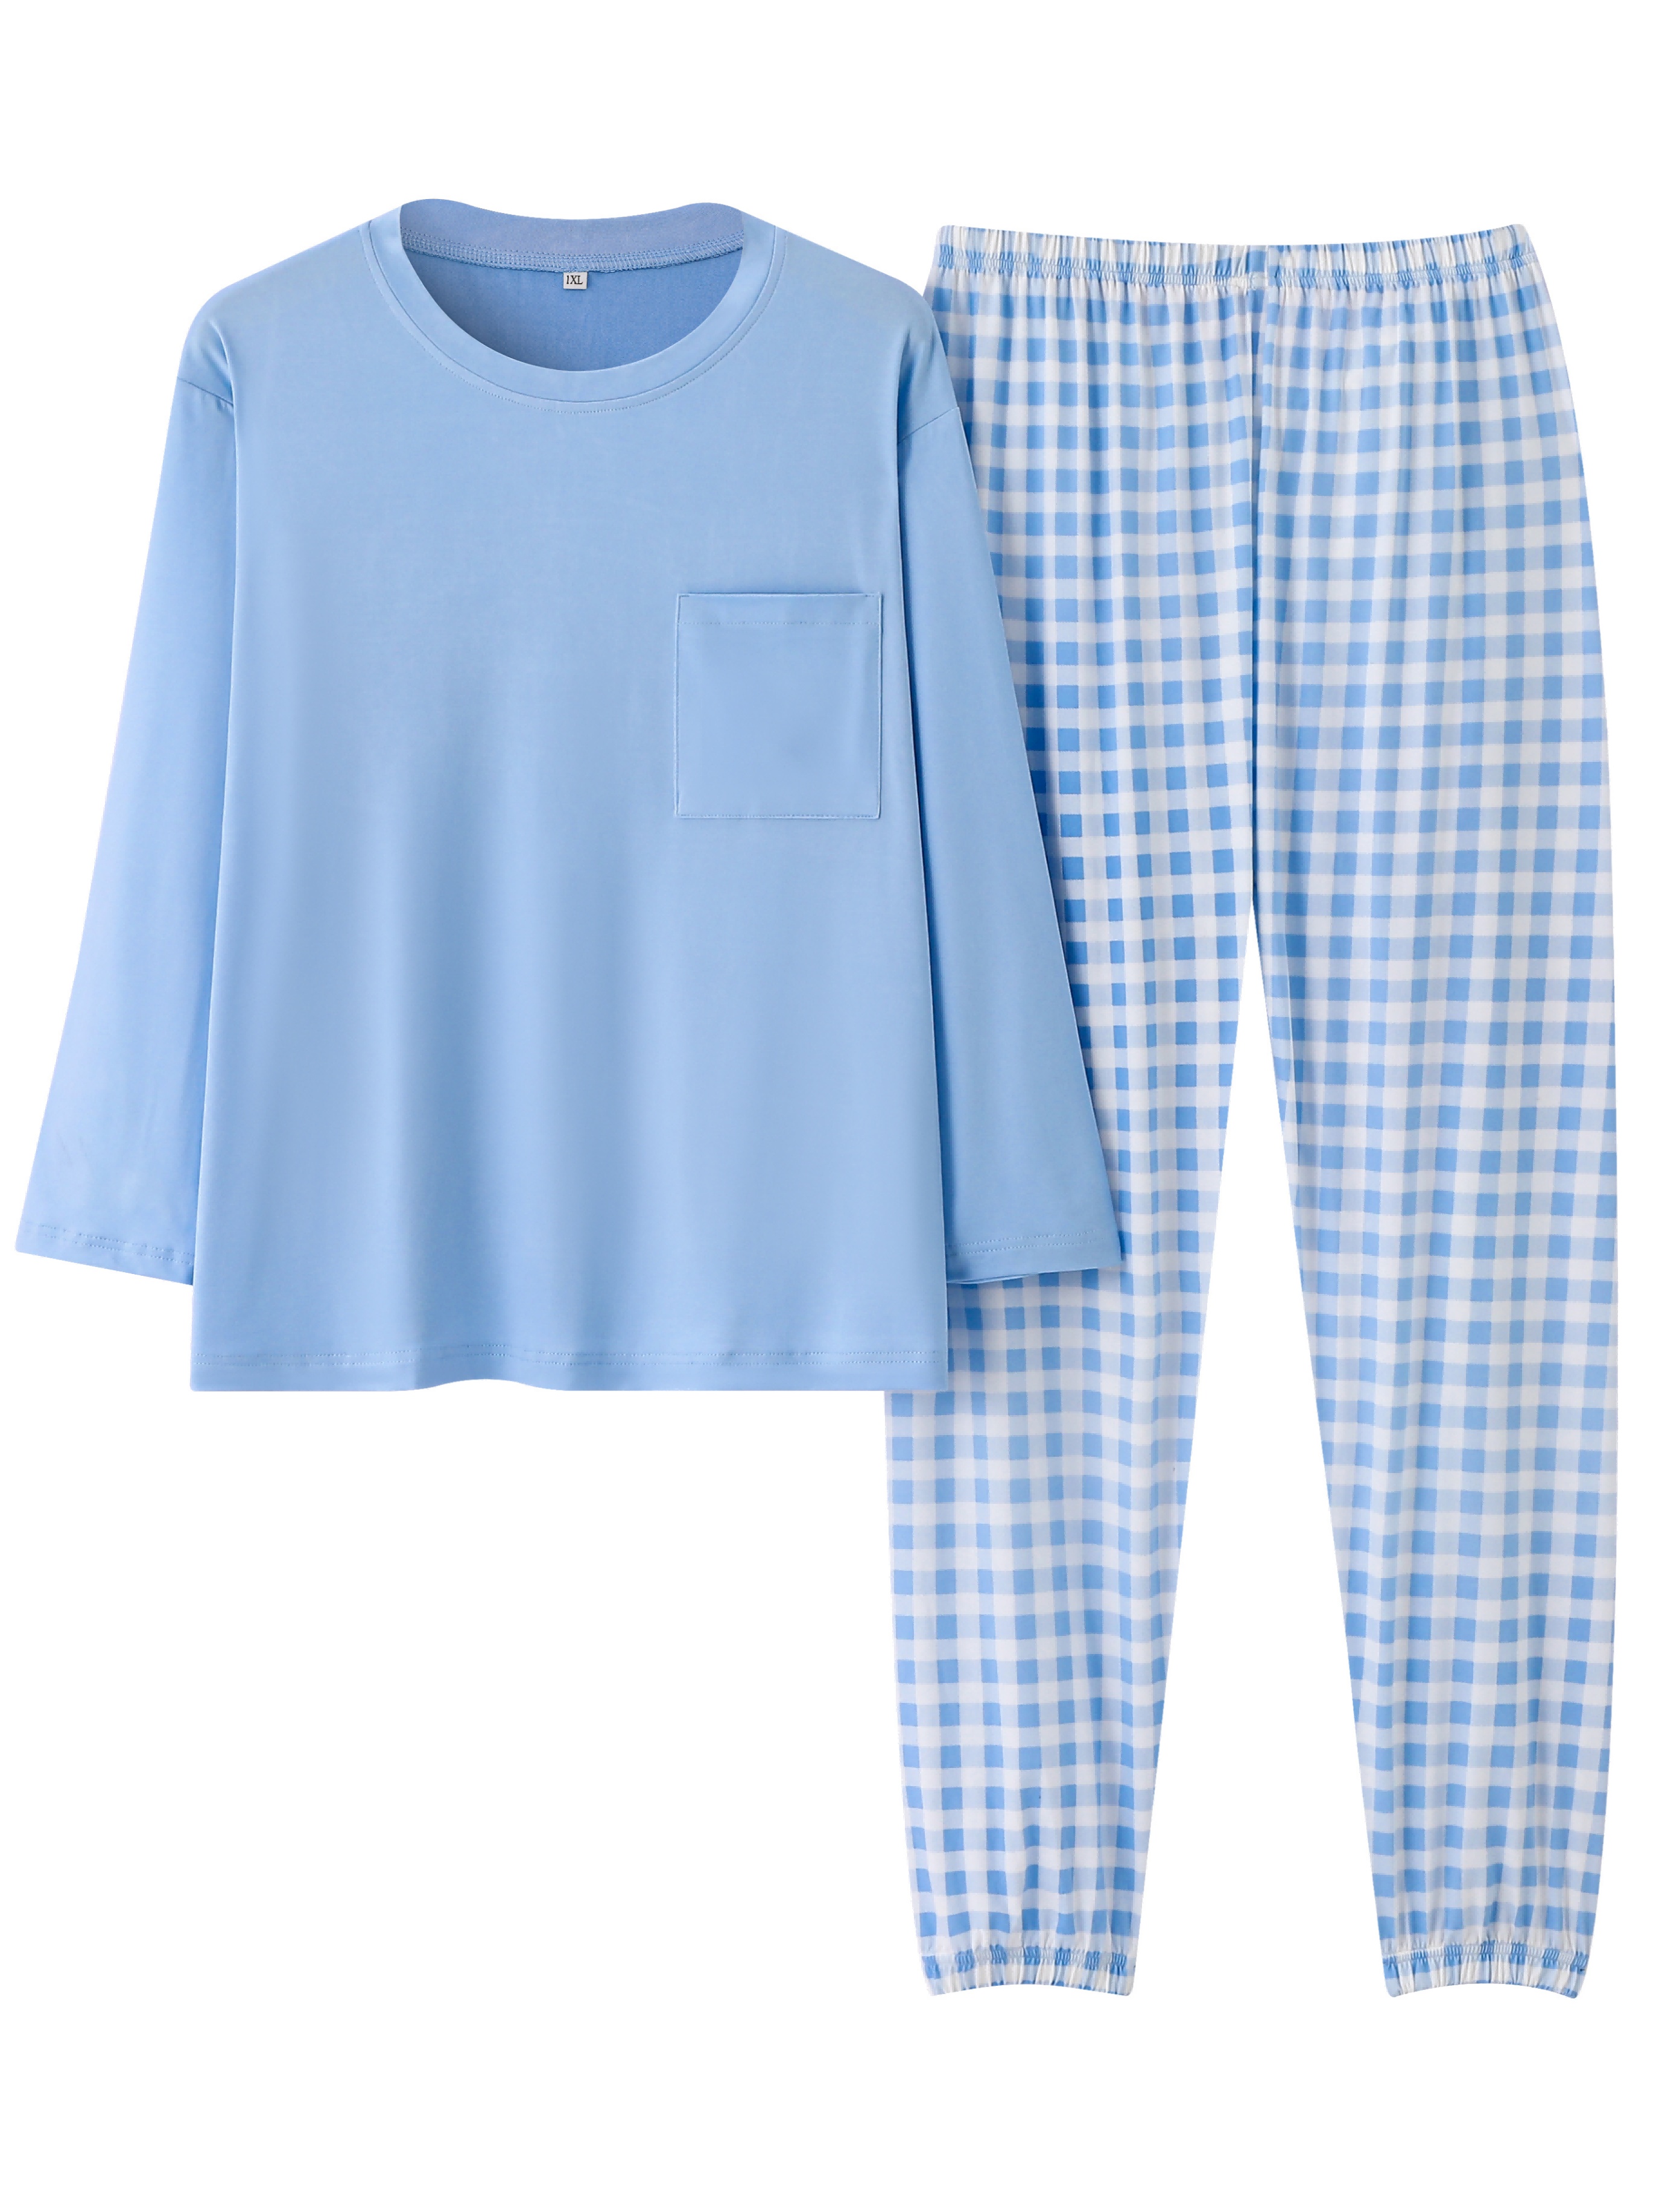 Women's Pajama Sets Women Soft Sleepwear 2PCS Loungwear Pjs Top